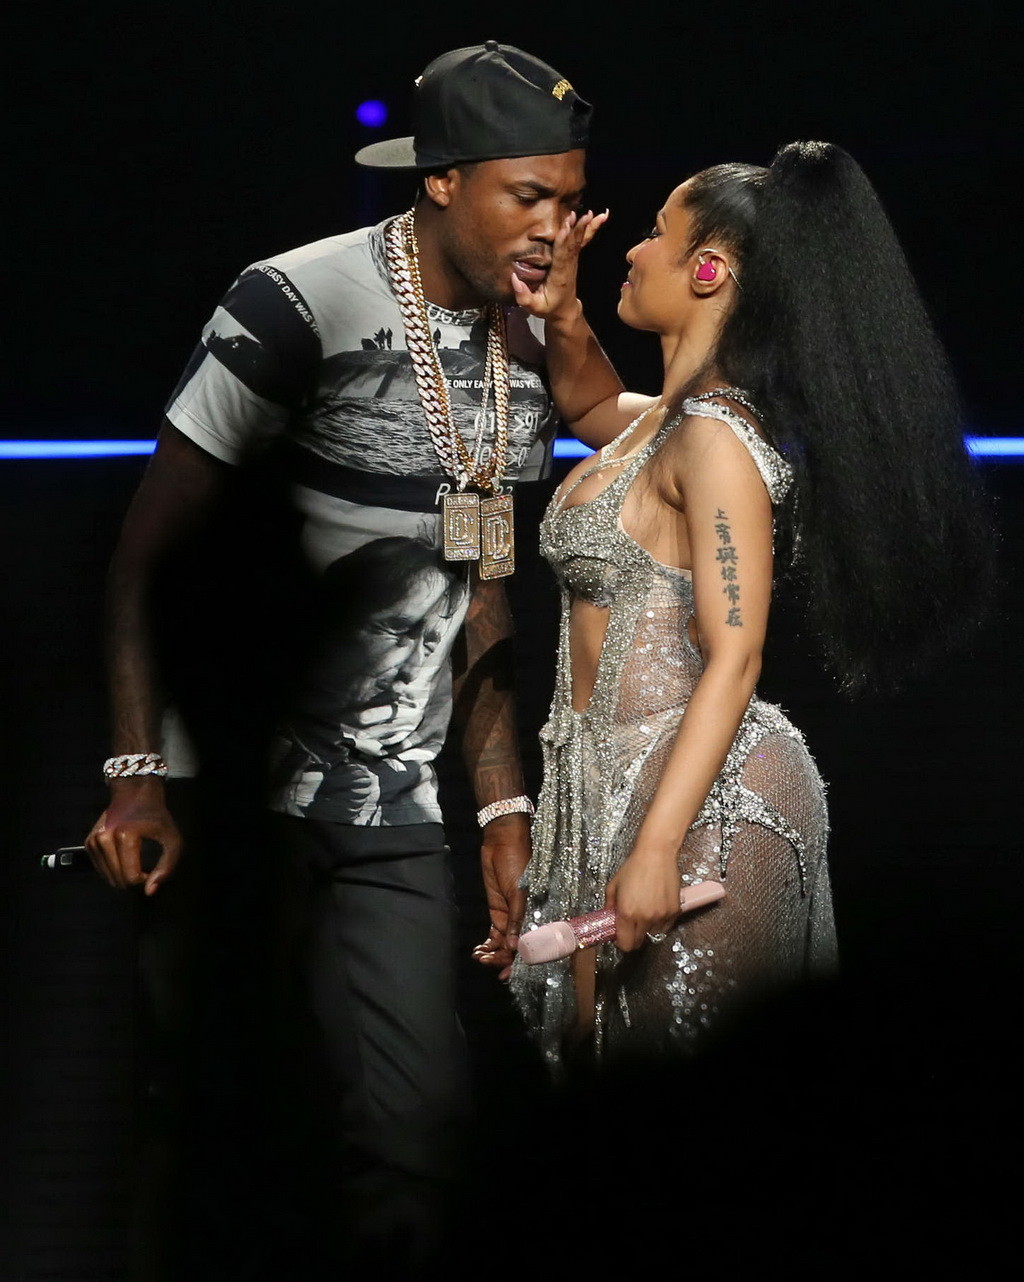 Nicki Minaj areola peek and hot kiss on the stage #75155241